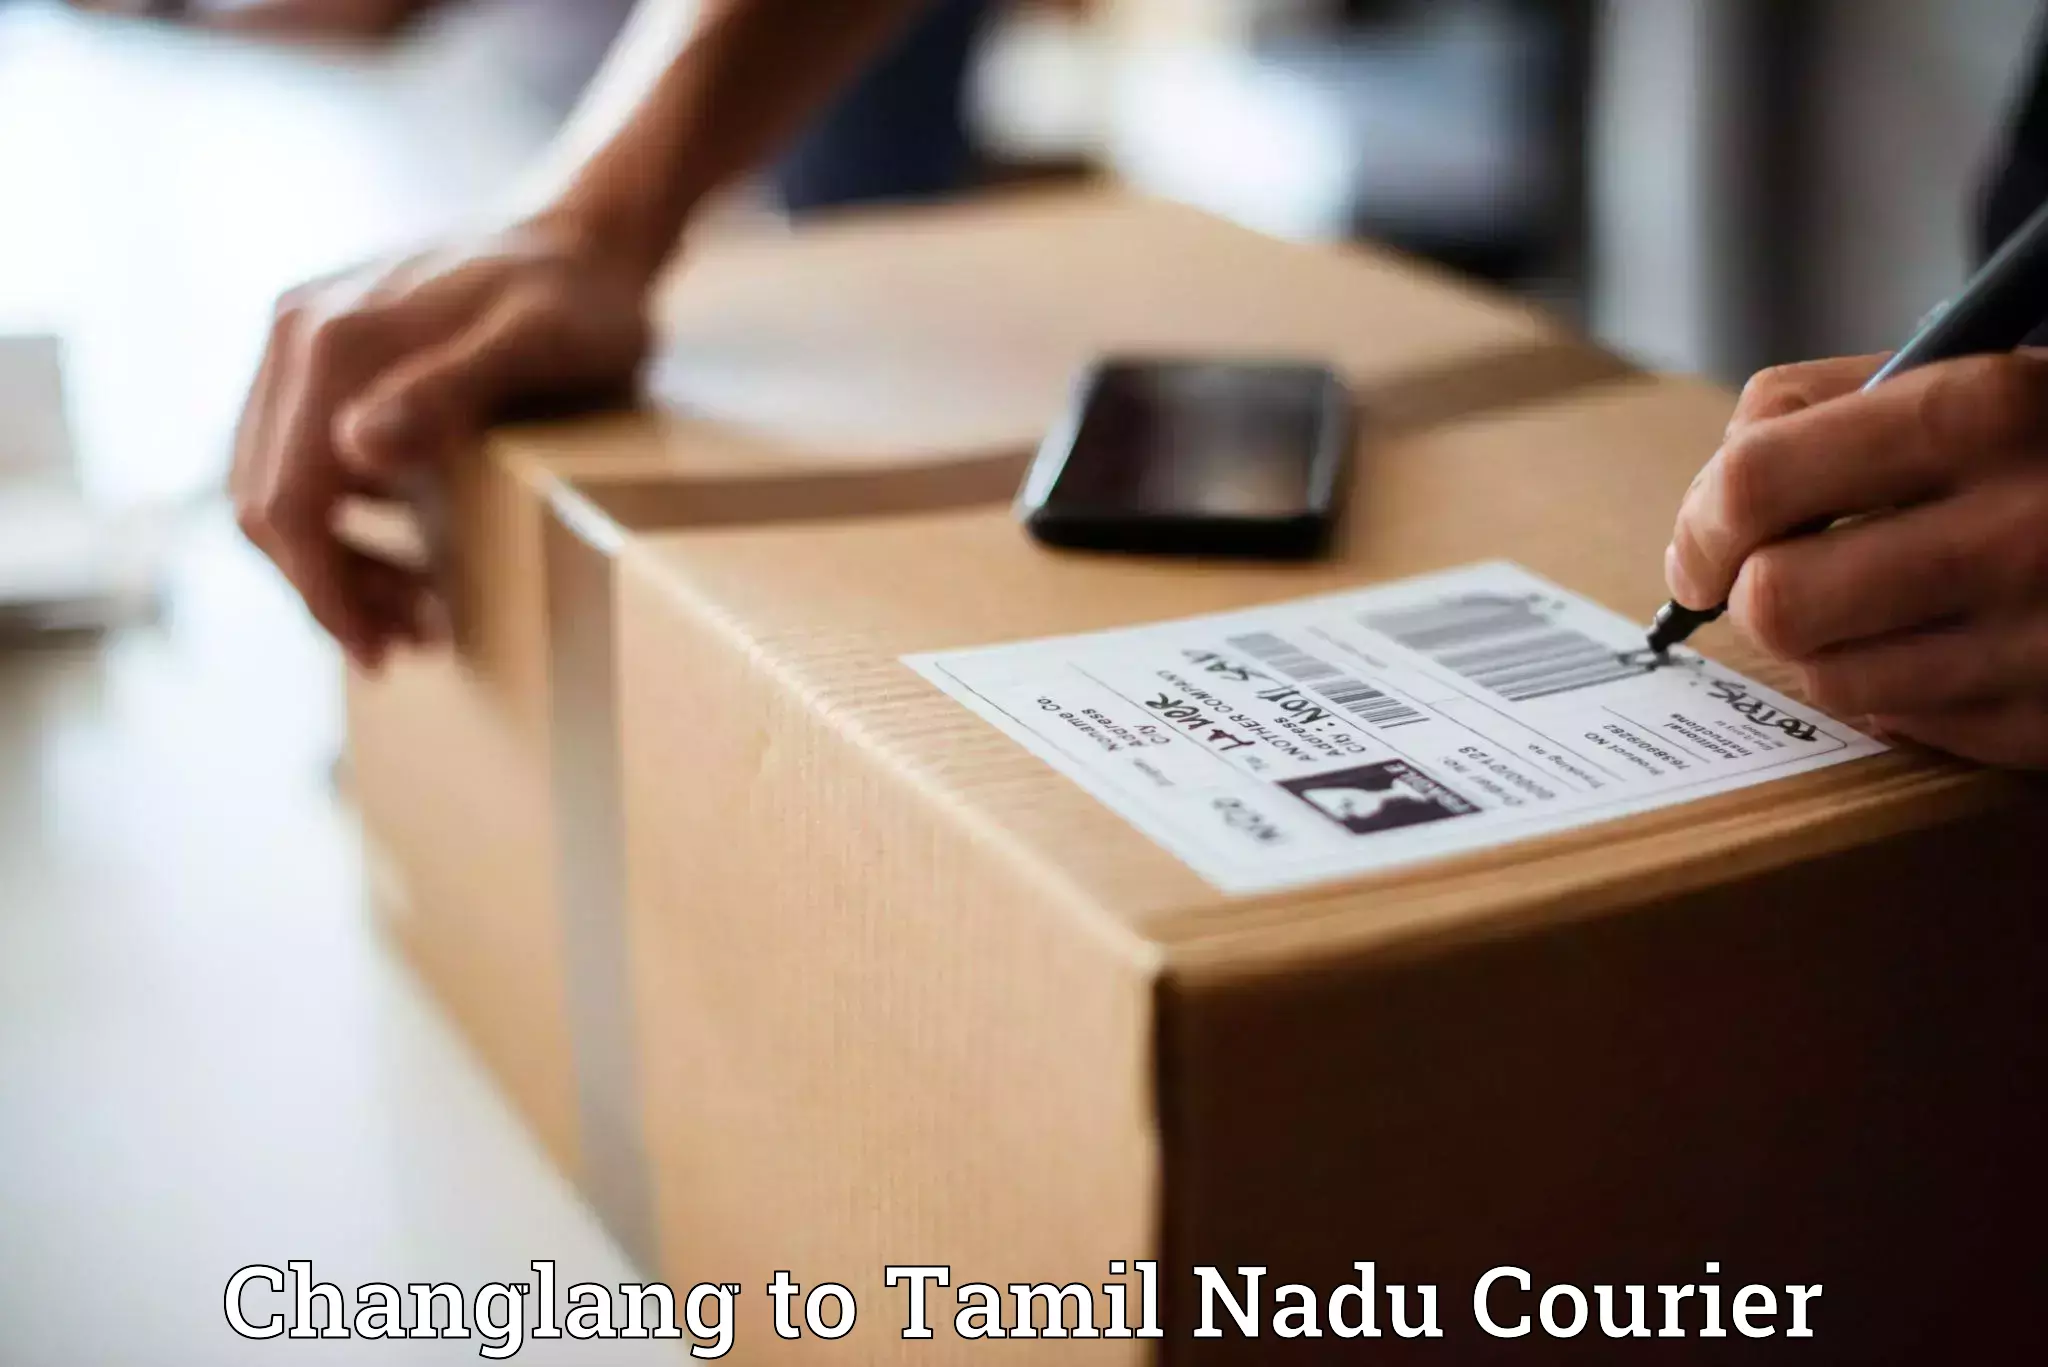 On-demand shipping options Changlang to Tamil Nadu